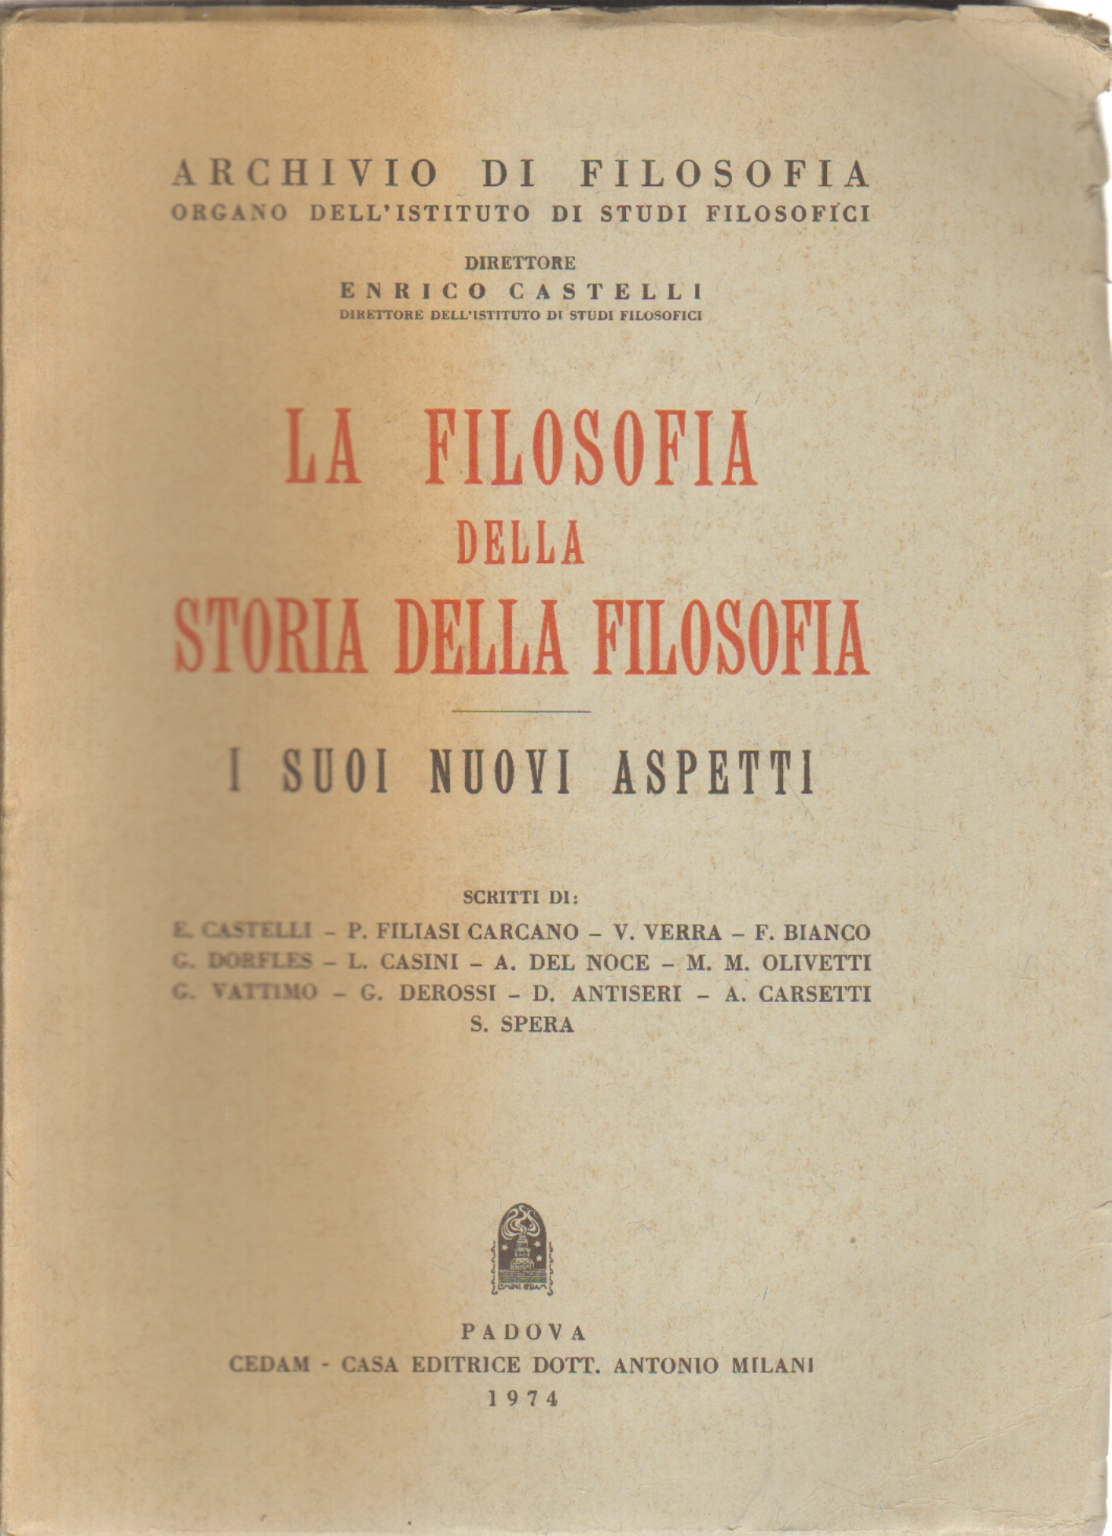 La Filosofia della storia della filosofia, Enrico Castelli